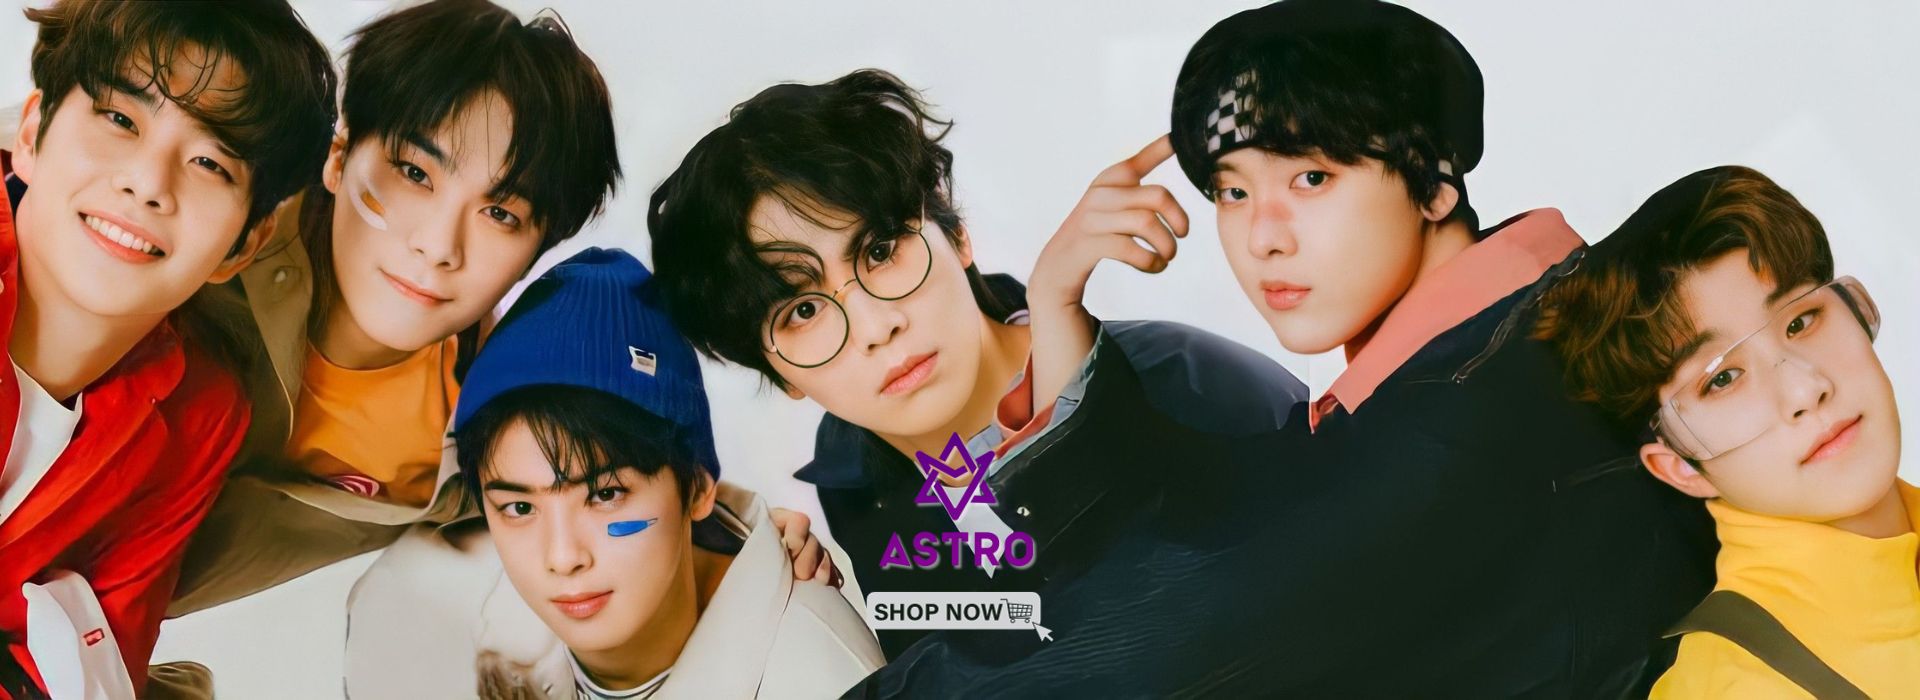 Astro Kpop Shop Banner